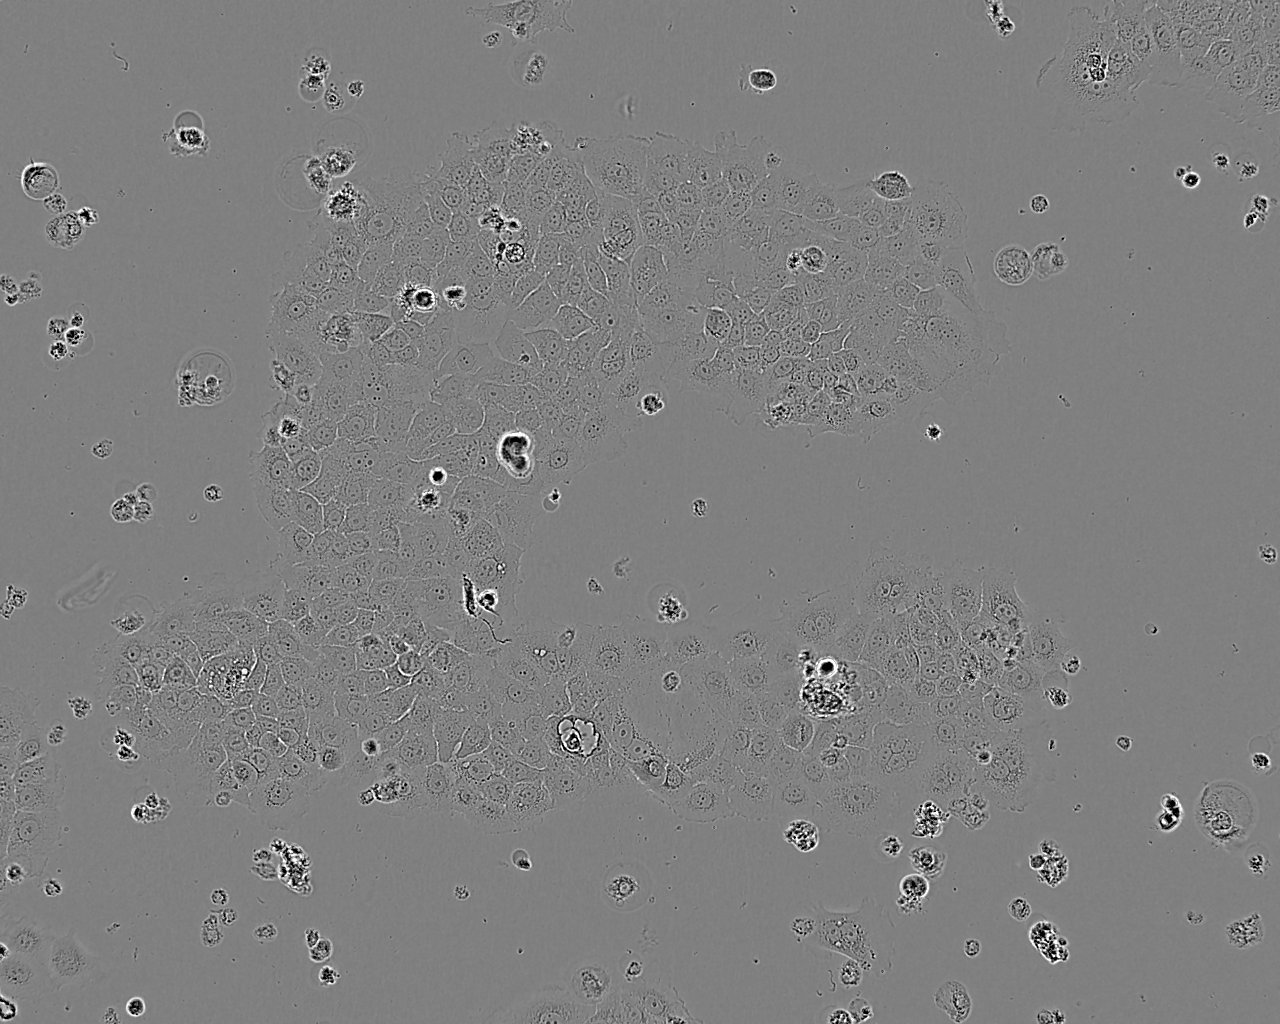 FRhK-4 epithelioid cells恒河猴胚肾细胞系,FRhK-4 epithelioid cells